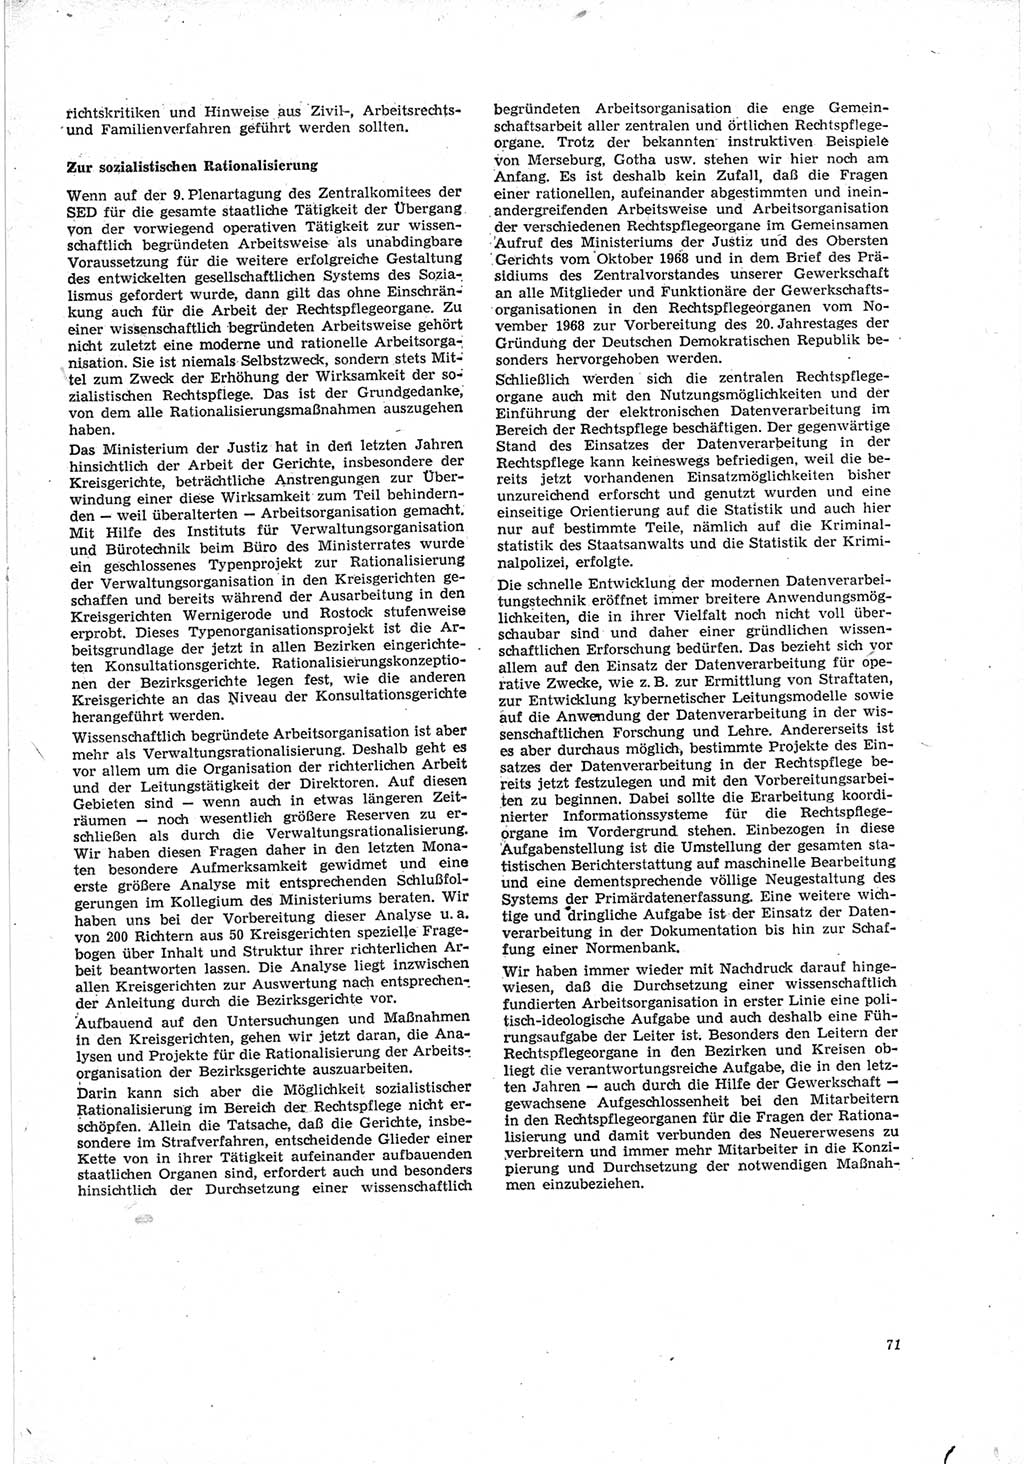 Neue Justiz (NJ), Zeitschrift für Recht und Rechtswissenschaft [Deutsche Demokratische Republik (DDR)], 23. Jahrgang 1969, Seite 71 (NJ DDR 1969, S. 71)